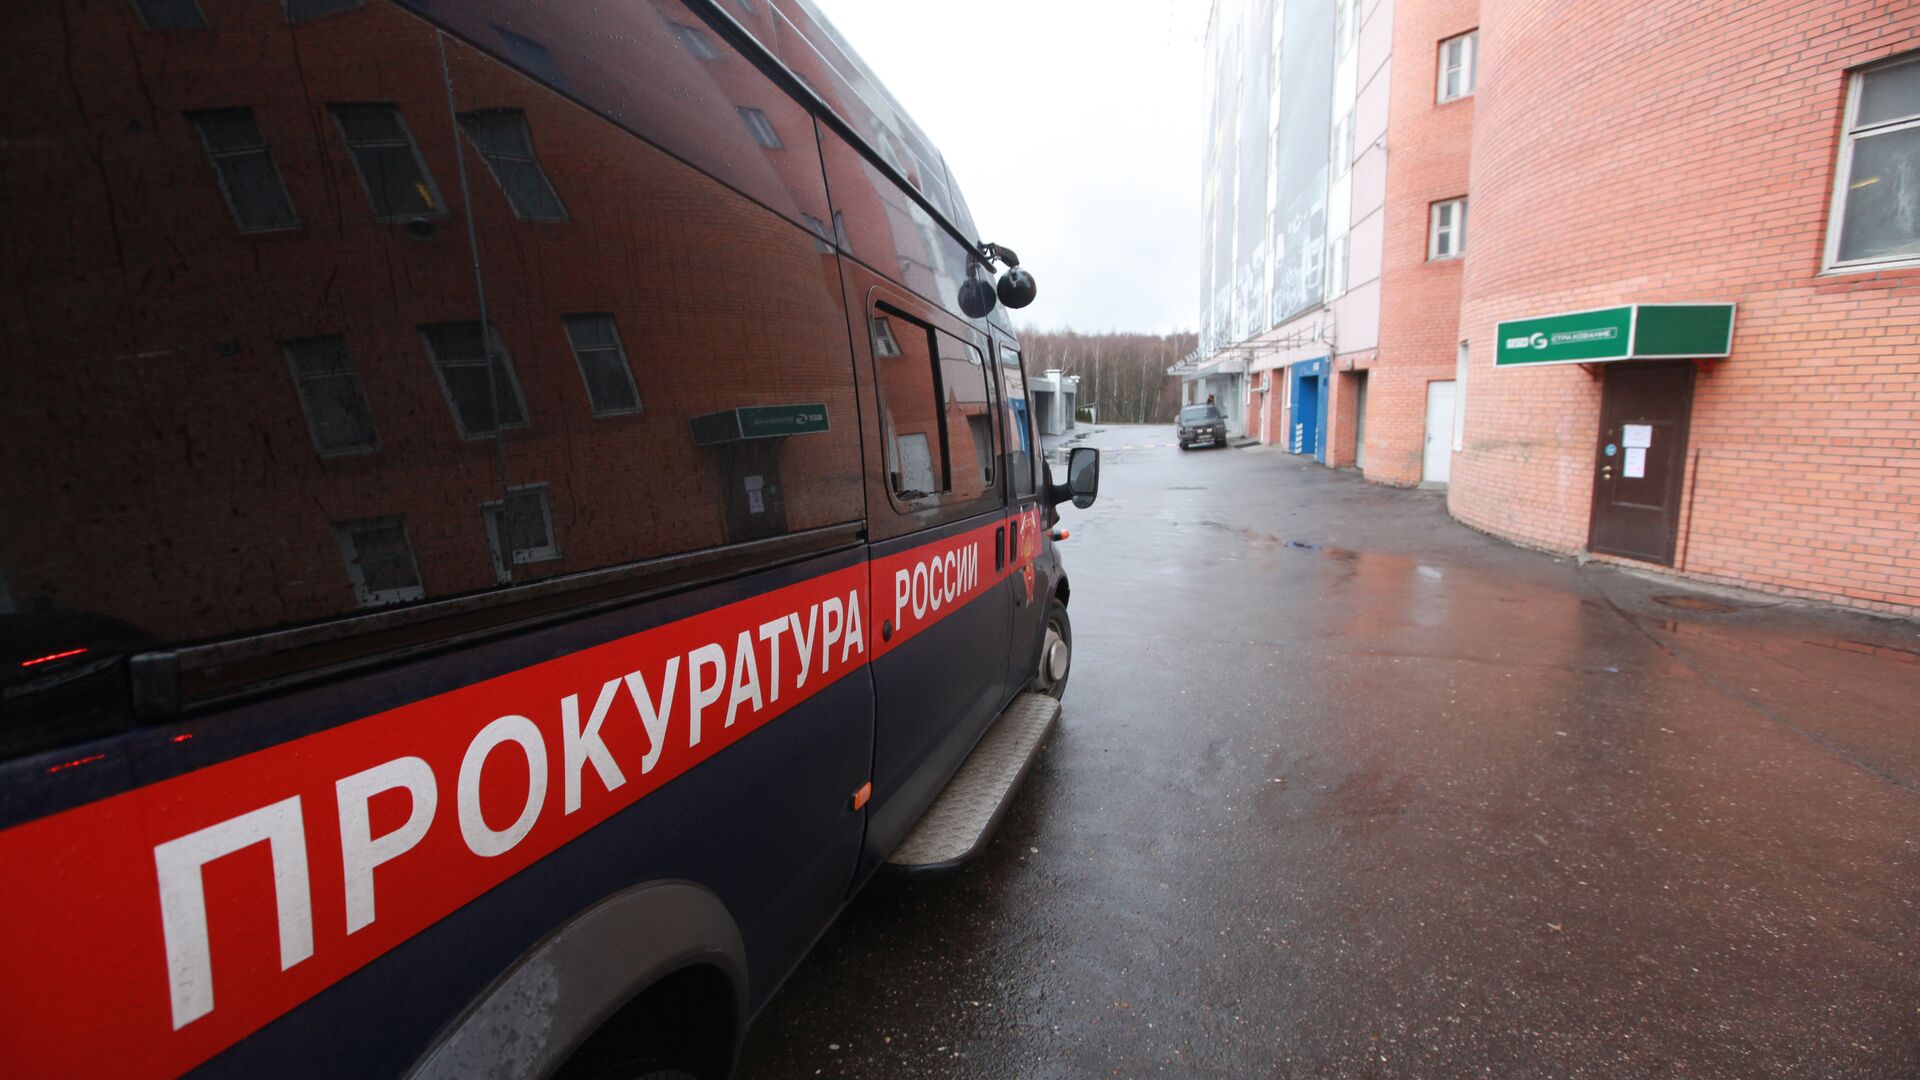 Прокуратура потребовала закрыть притравочную станцию в Калужской области